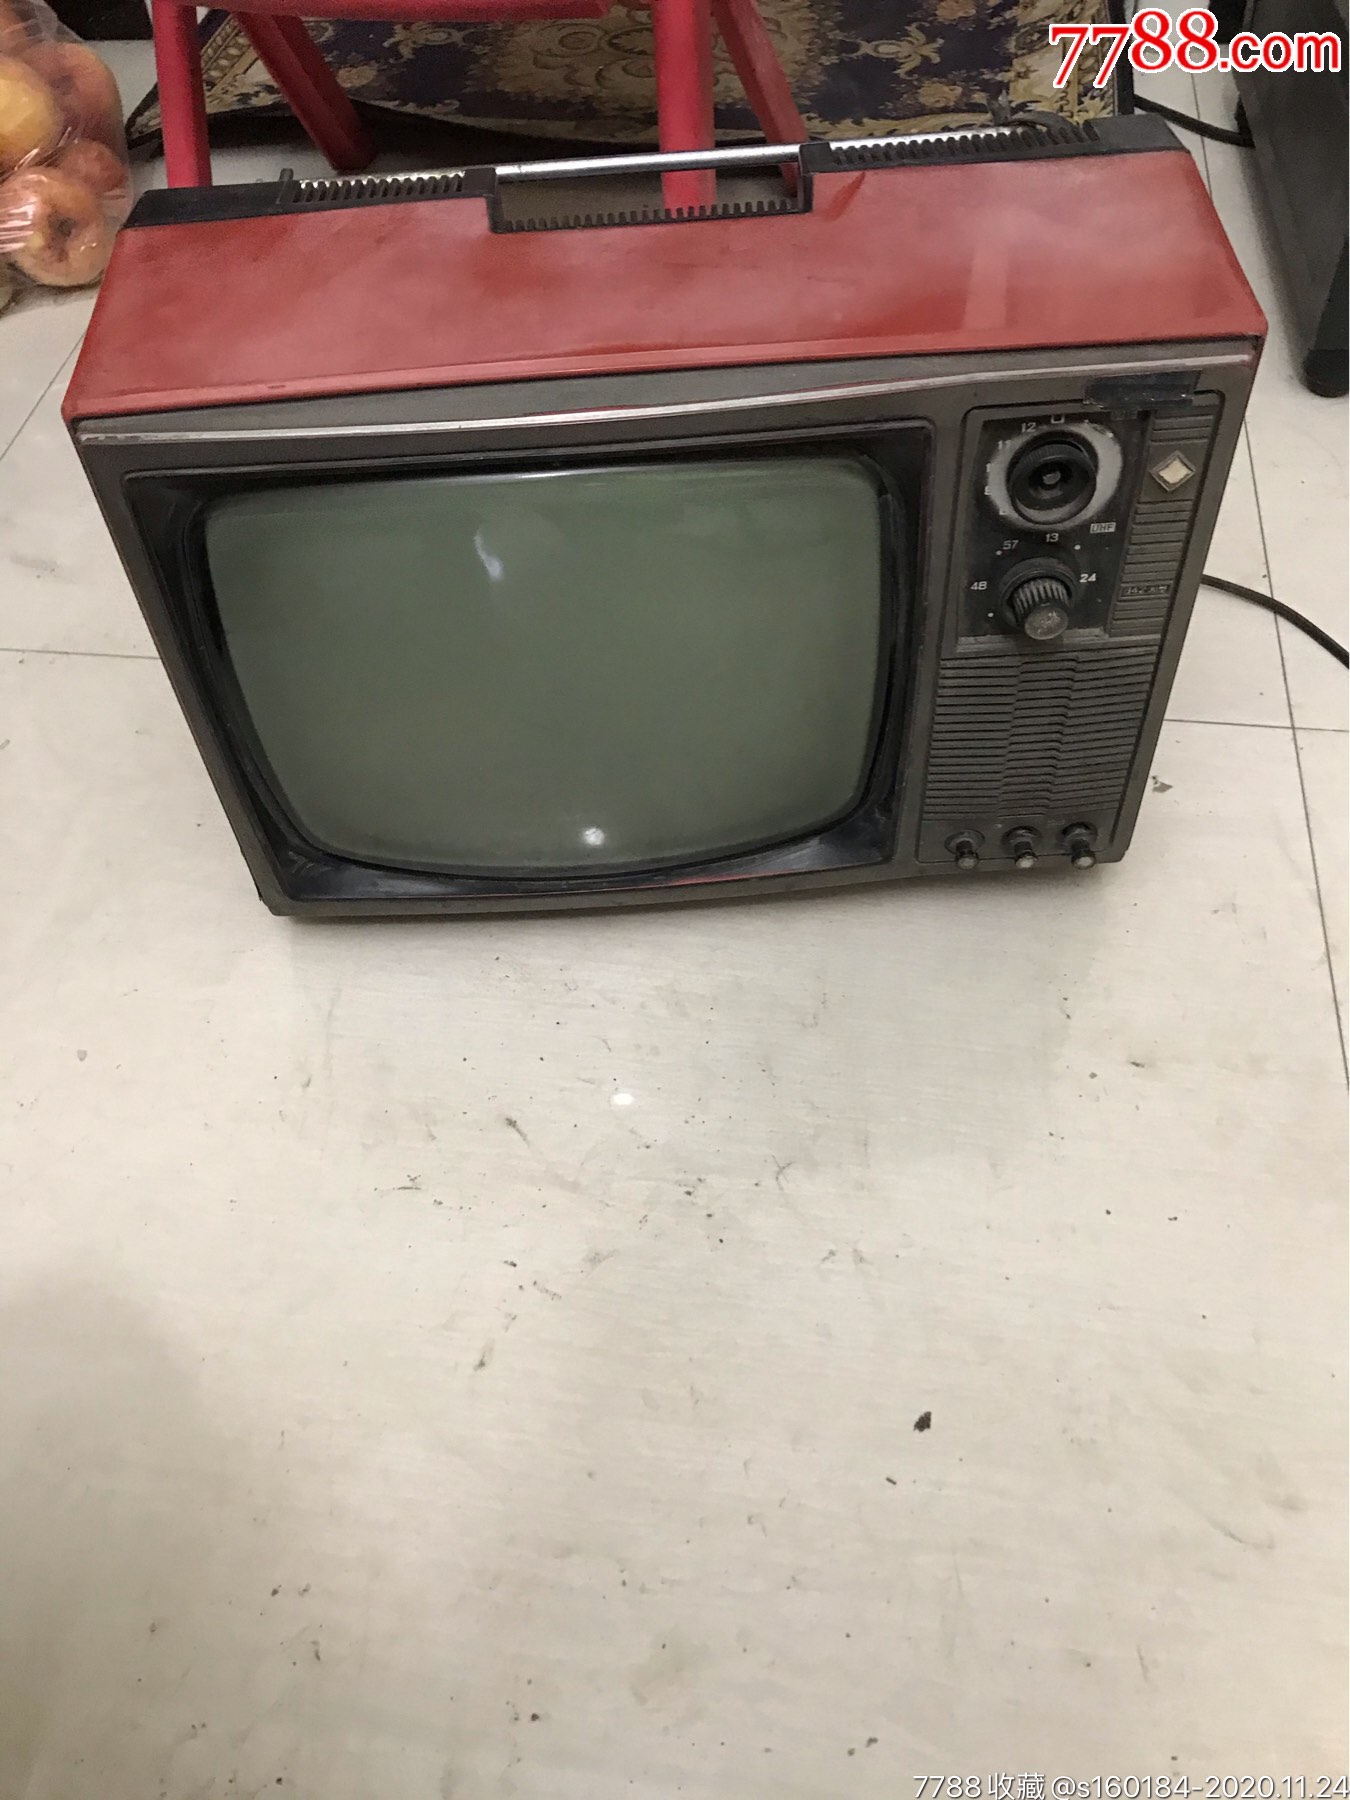 早期,北京牌,黑白电视机,很小